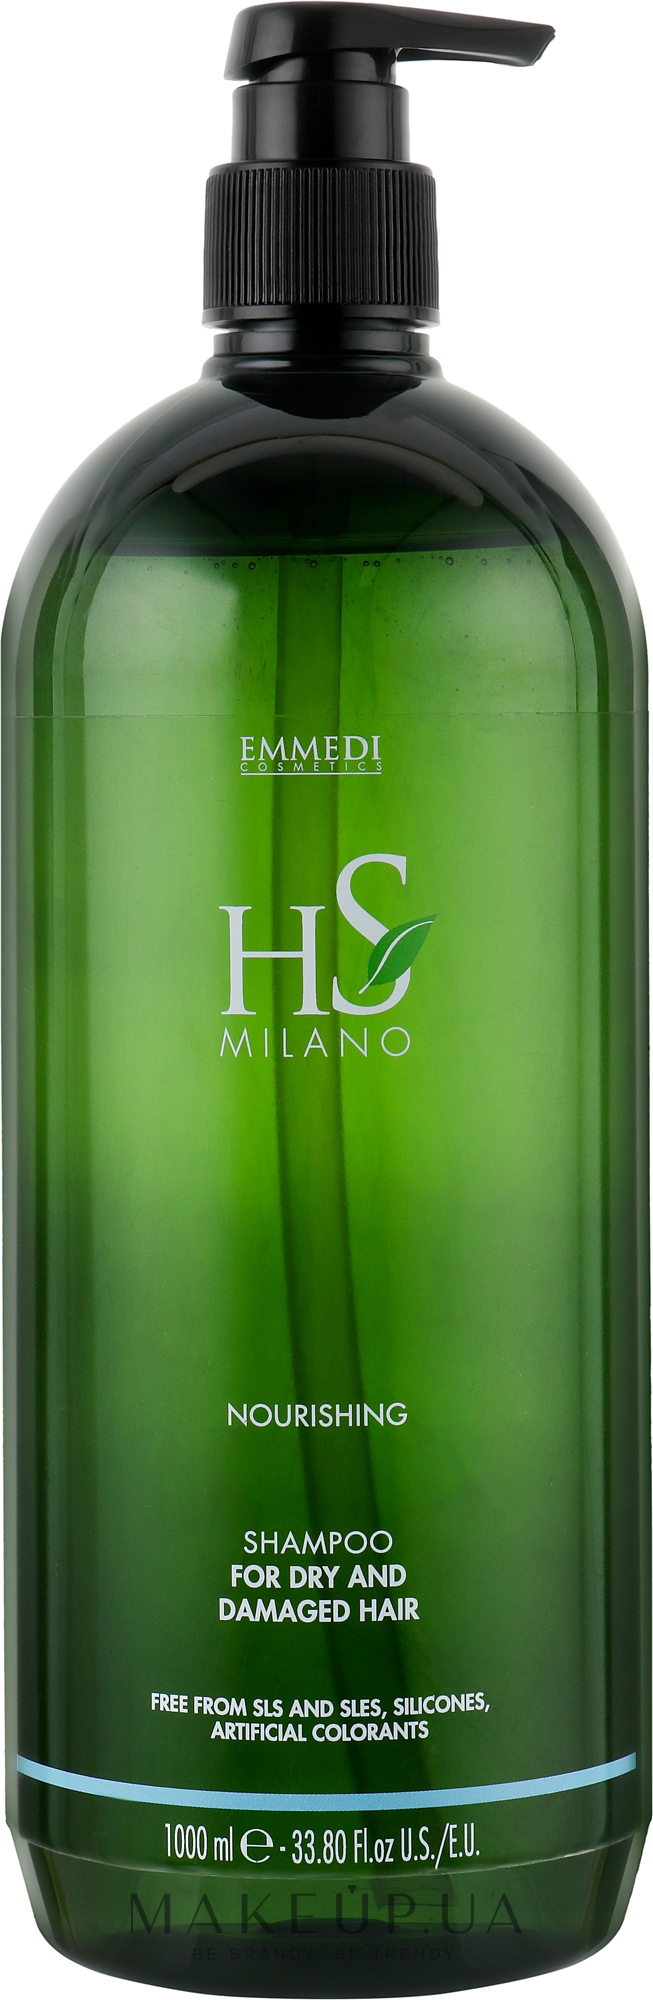 Питательный шампунь для сухих и поврежденных волос - HS Milano Nourishing Shampoo For Dry And Damaged Hair — фото 1000ml